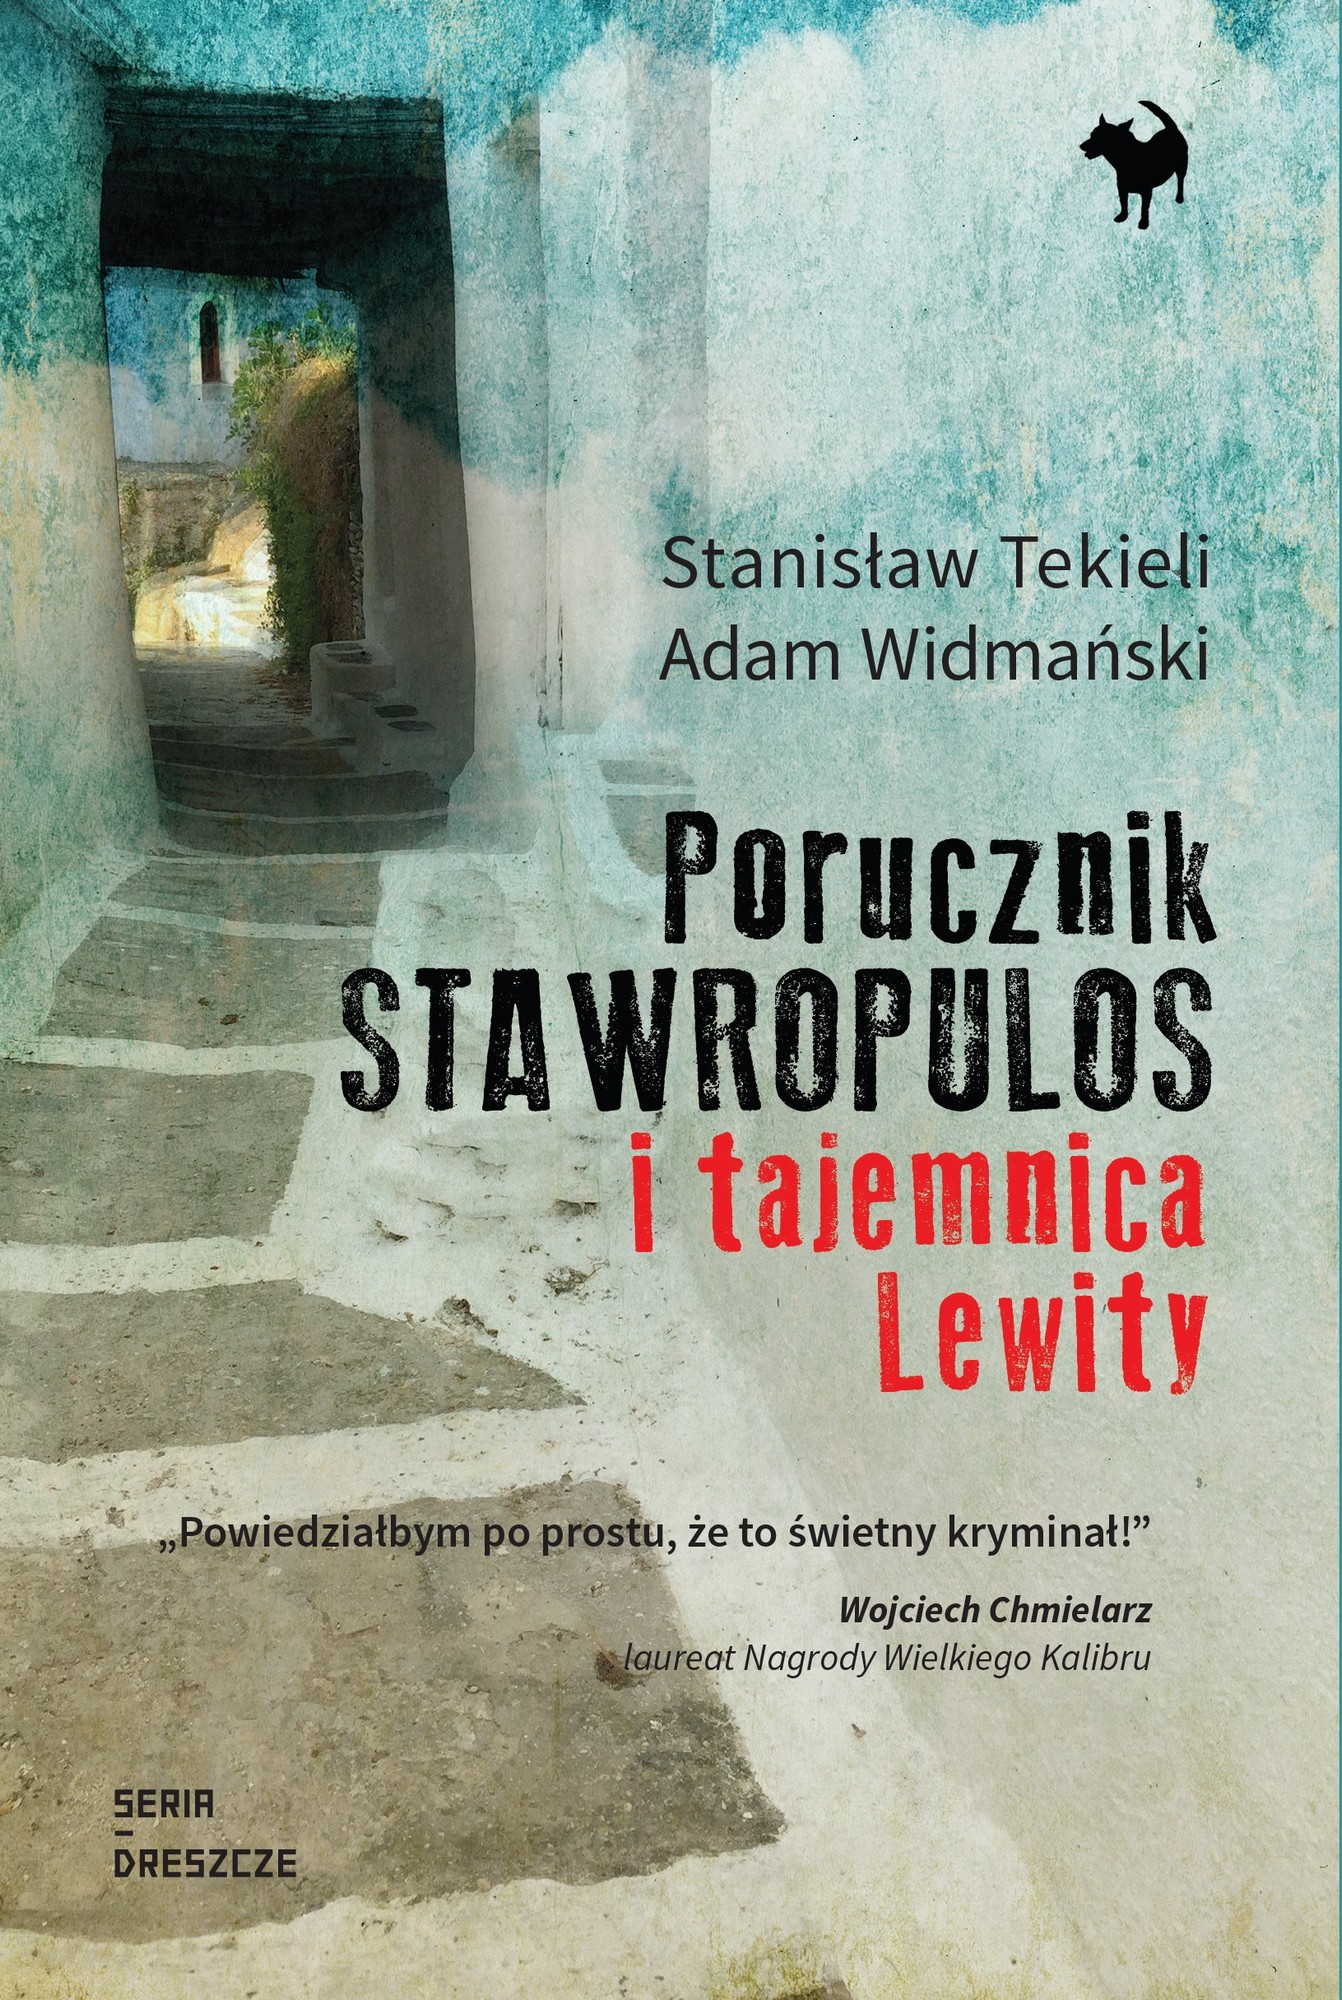 Stanisław Tekieli, Adam Widmański, „Porucznik Stawropulos i tajemnica Lewity” – okładka (źródło: materiały prasowe wydawcy)